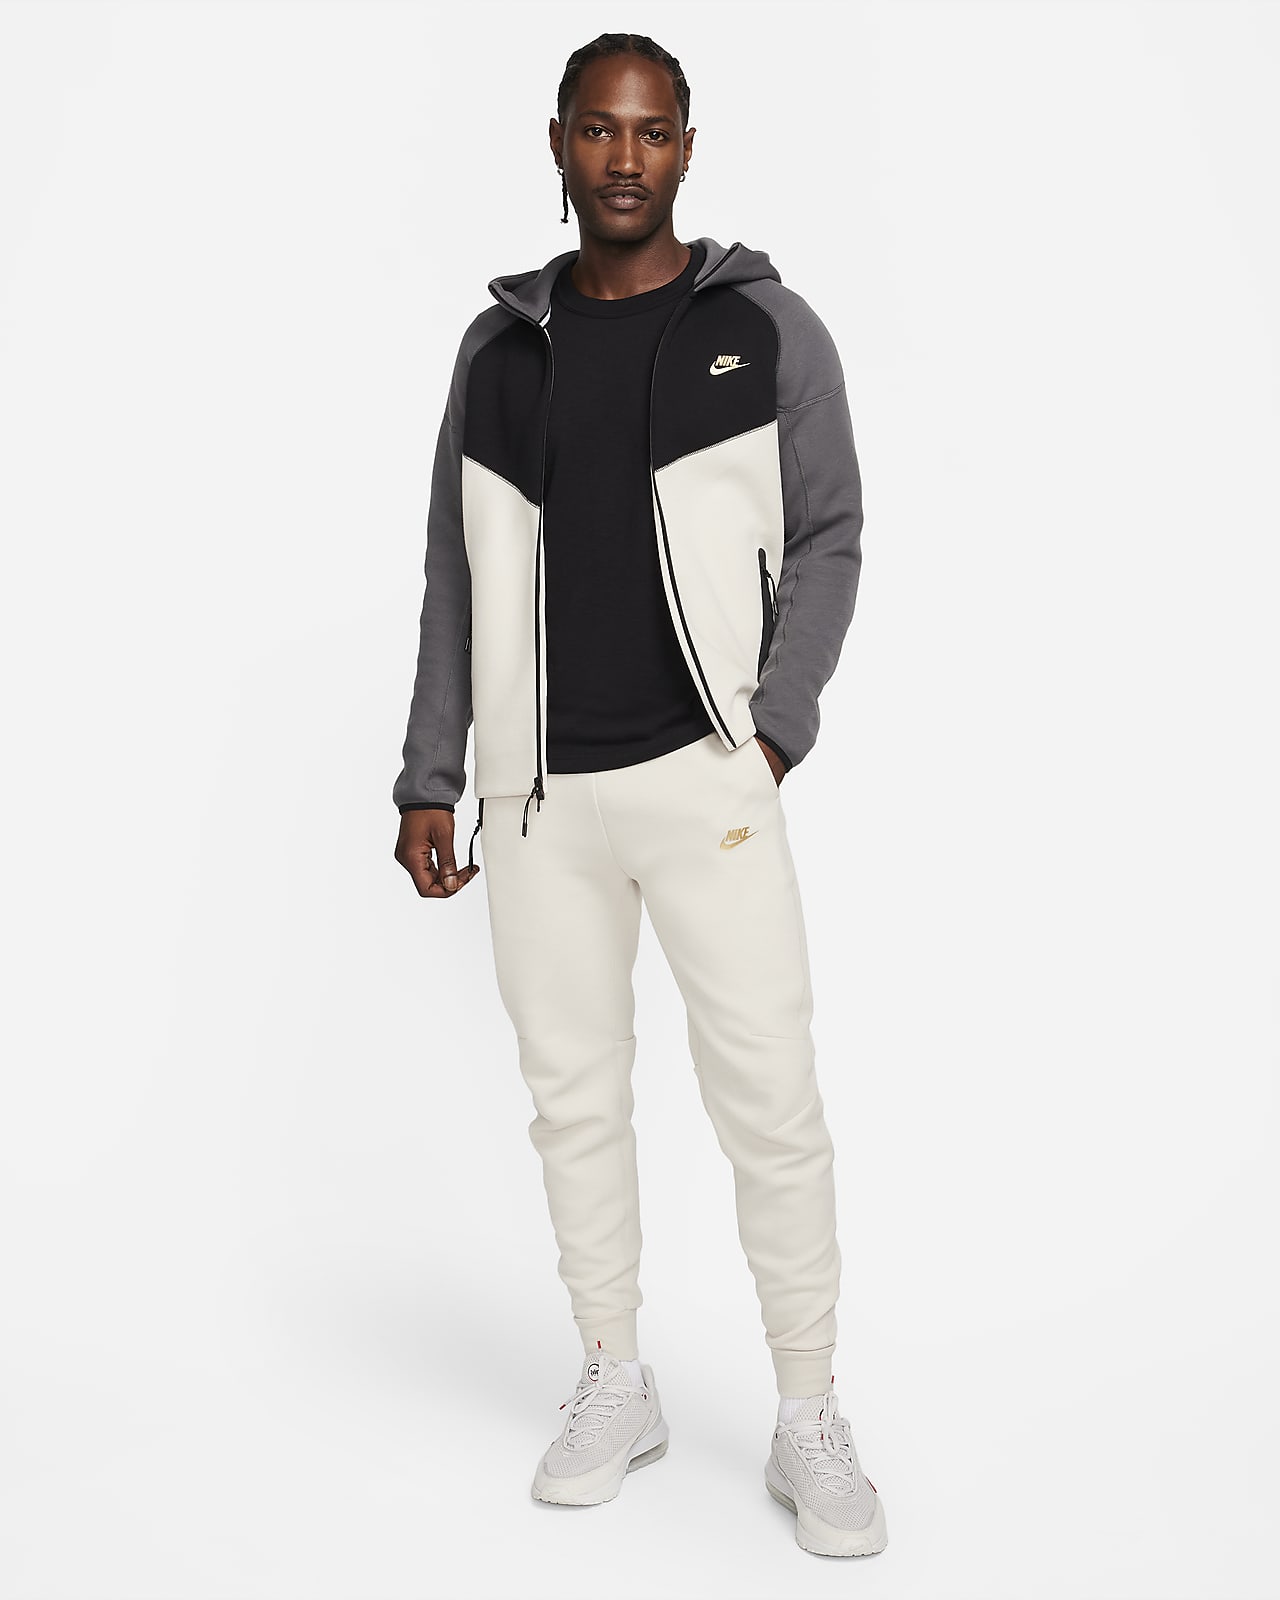 Nike Sportswear Tech Fleece Men's Joggers Carbon Heather/Cool Grey  805162-091 